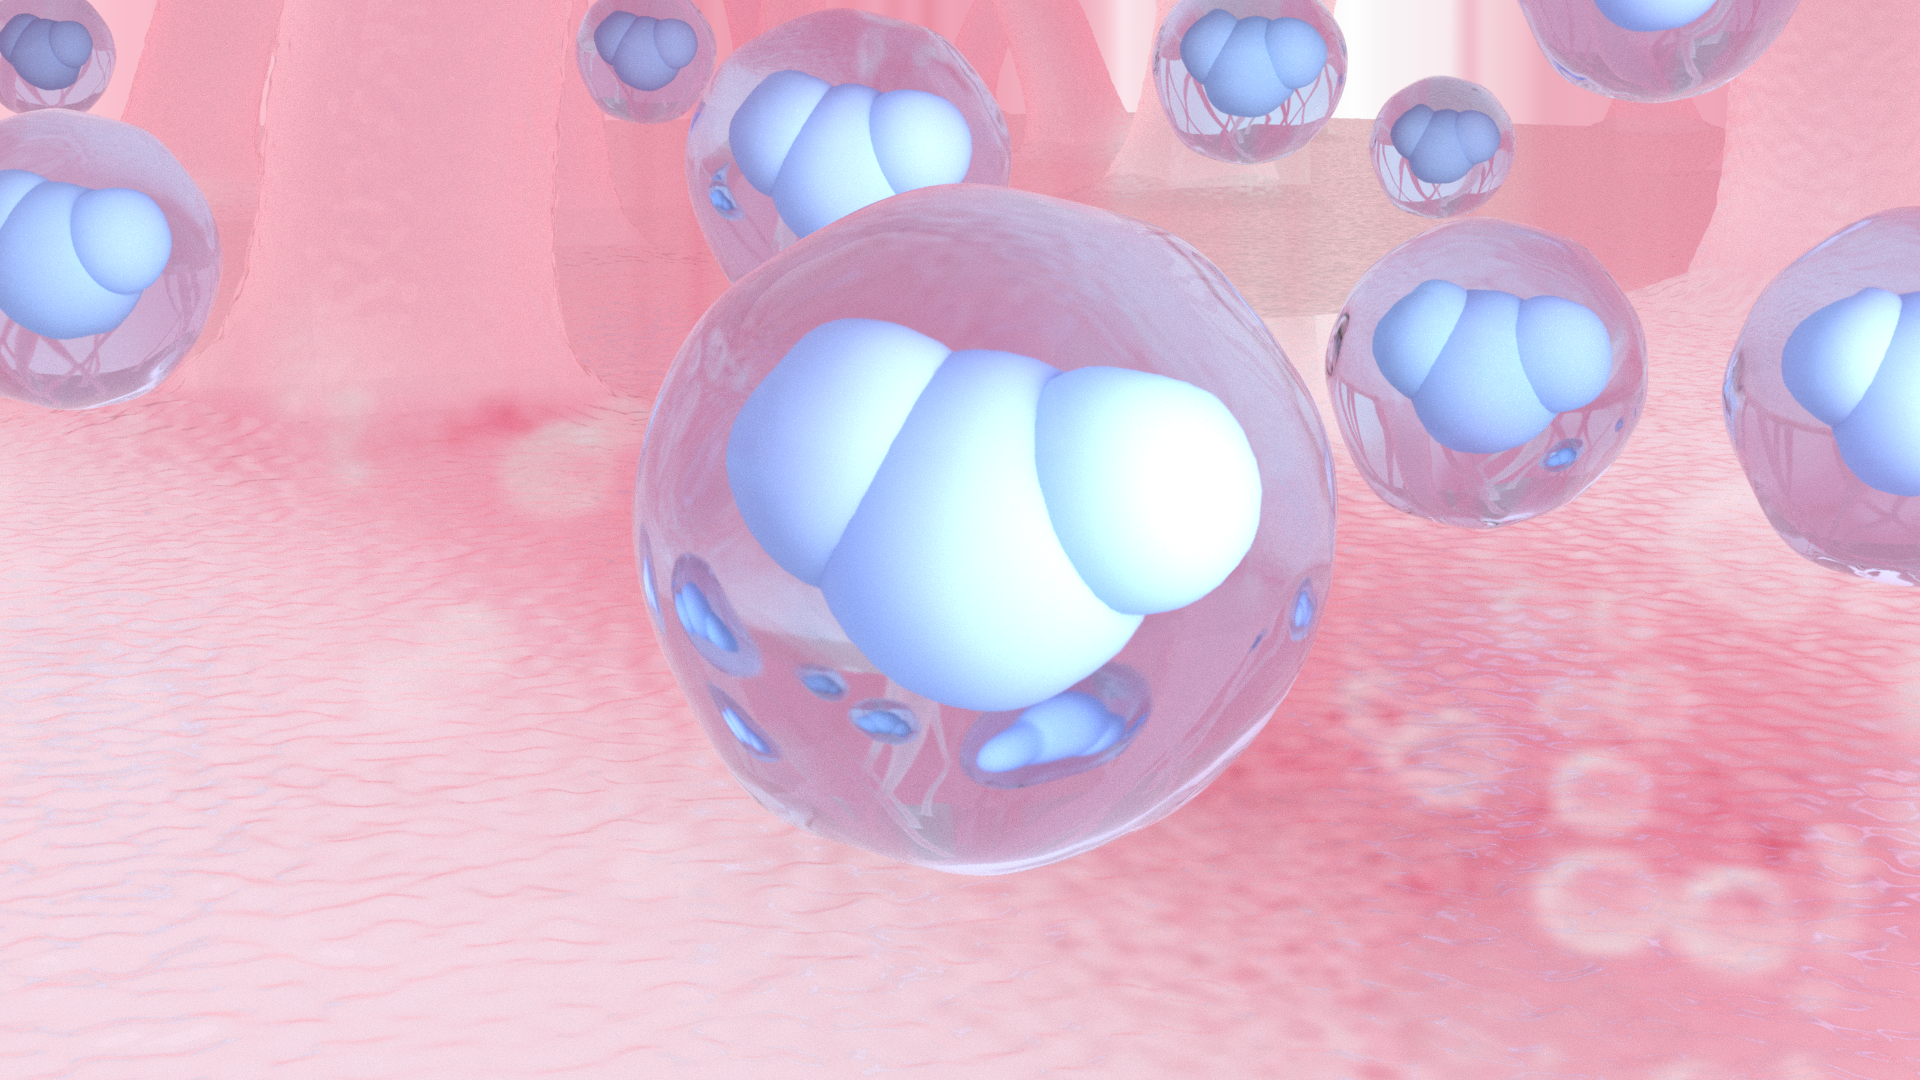 Skincare - Cellula acqua in 3D - Emmebistudio.com